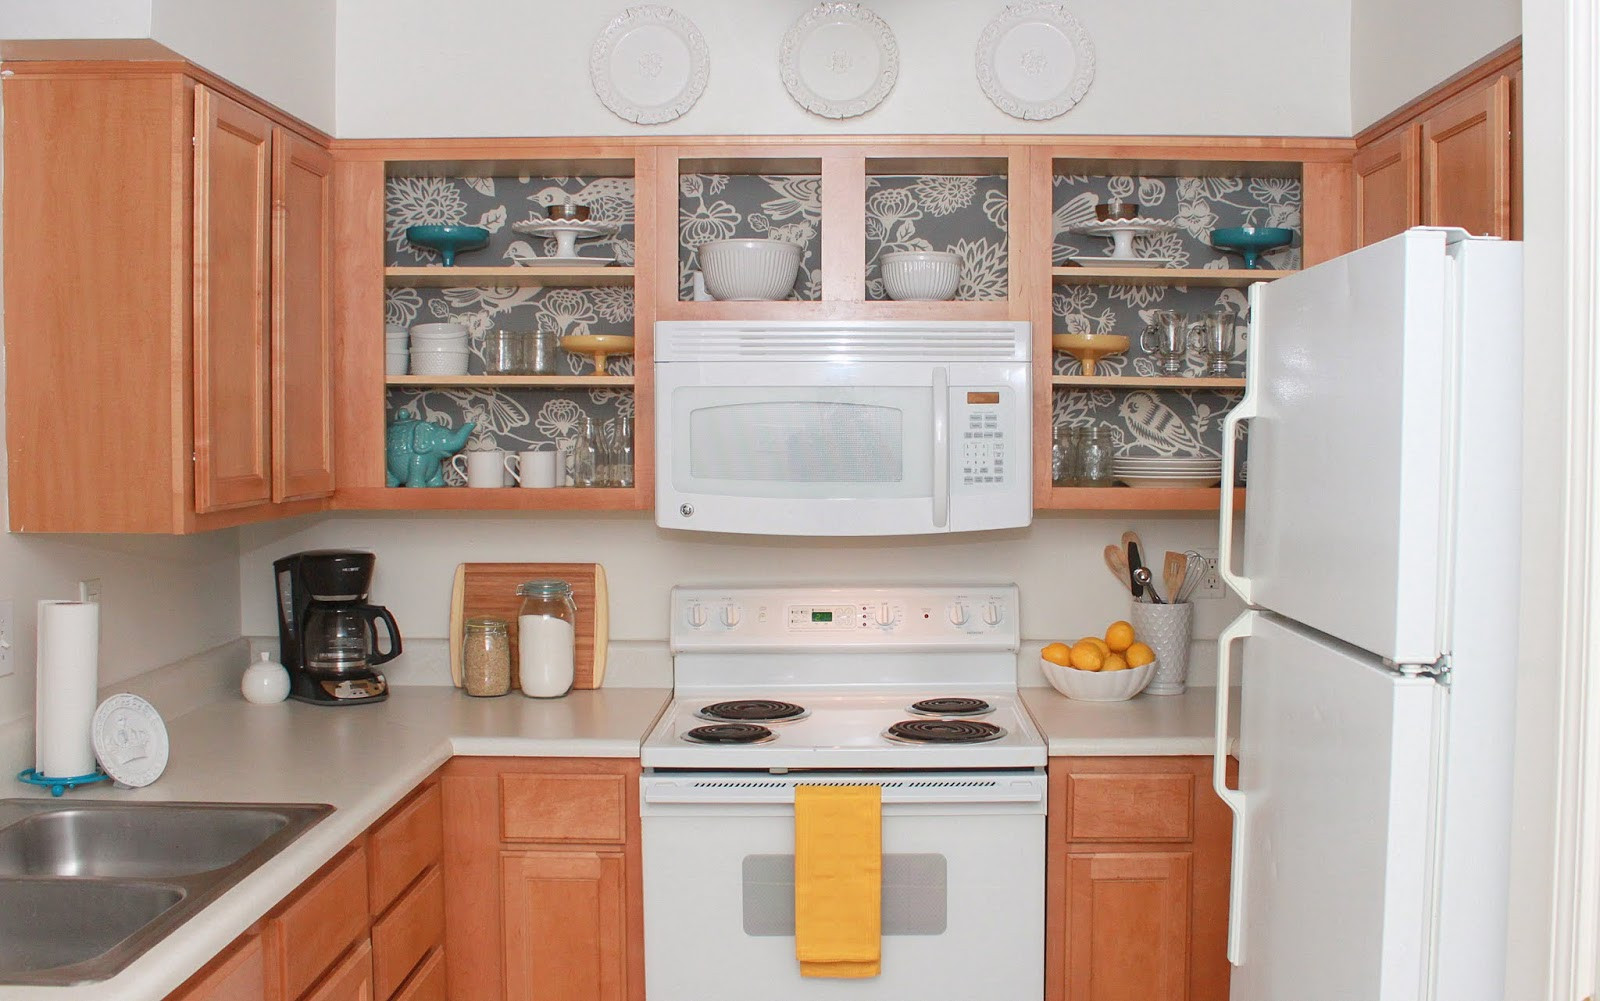 Best ideas about Apartment Kitchen Decor
. Save or Pin Apartment Decorating Ideas Our Kitchen Tour Now.